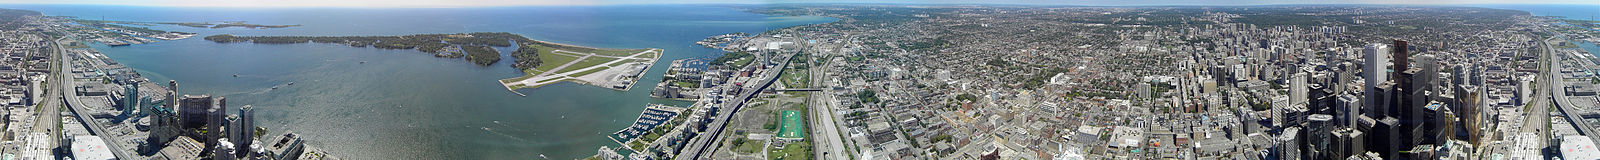 Gradska panorama (360 stupnjeva) snimljena sa CN tornja. Na lijevoj strani slike vidi se lanac otočića koji pripada samome gradu, gradski aerodrom te jezero Ontario, a na desnoj strani vidimo sami centar grada.